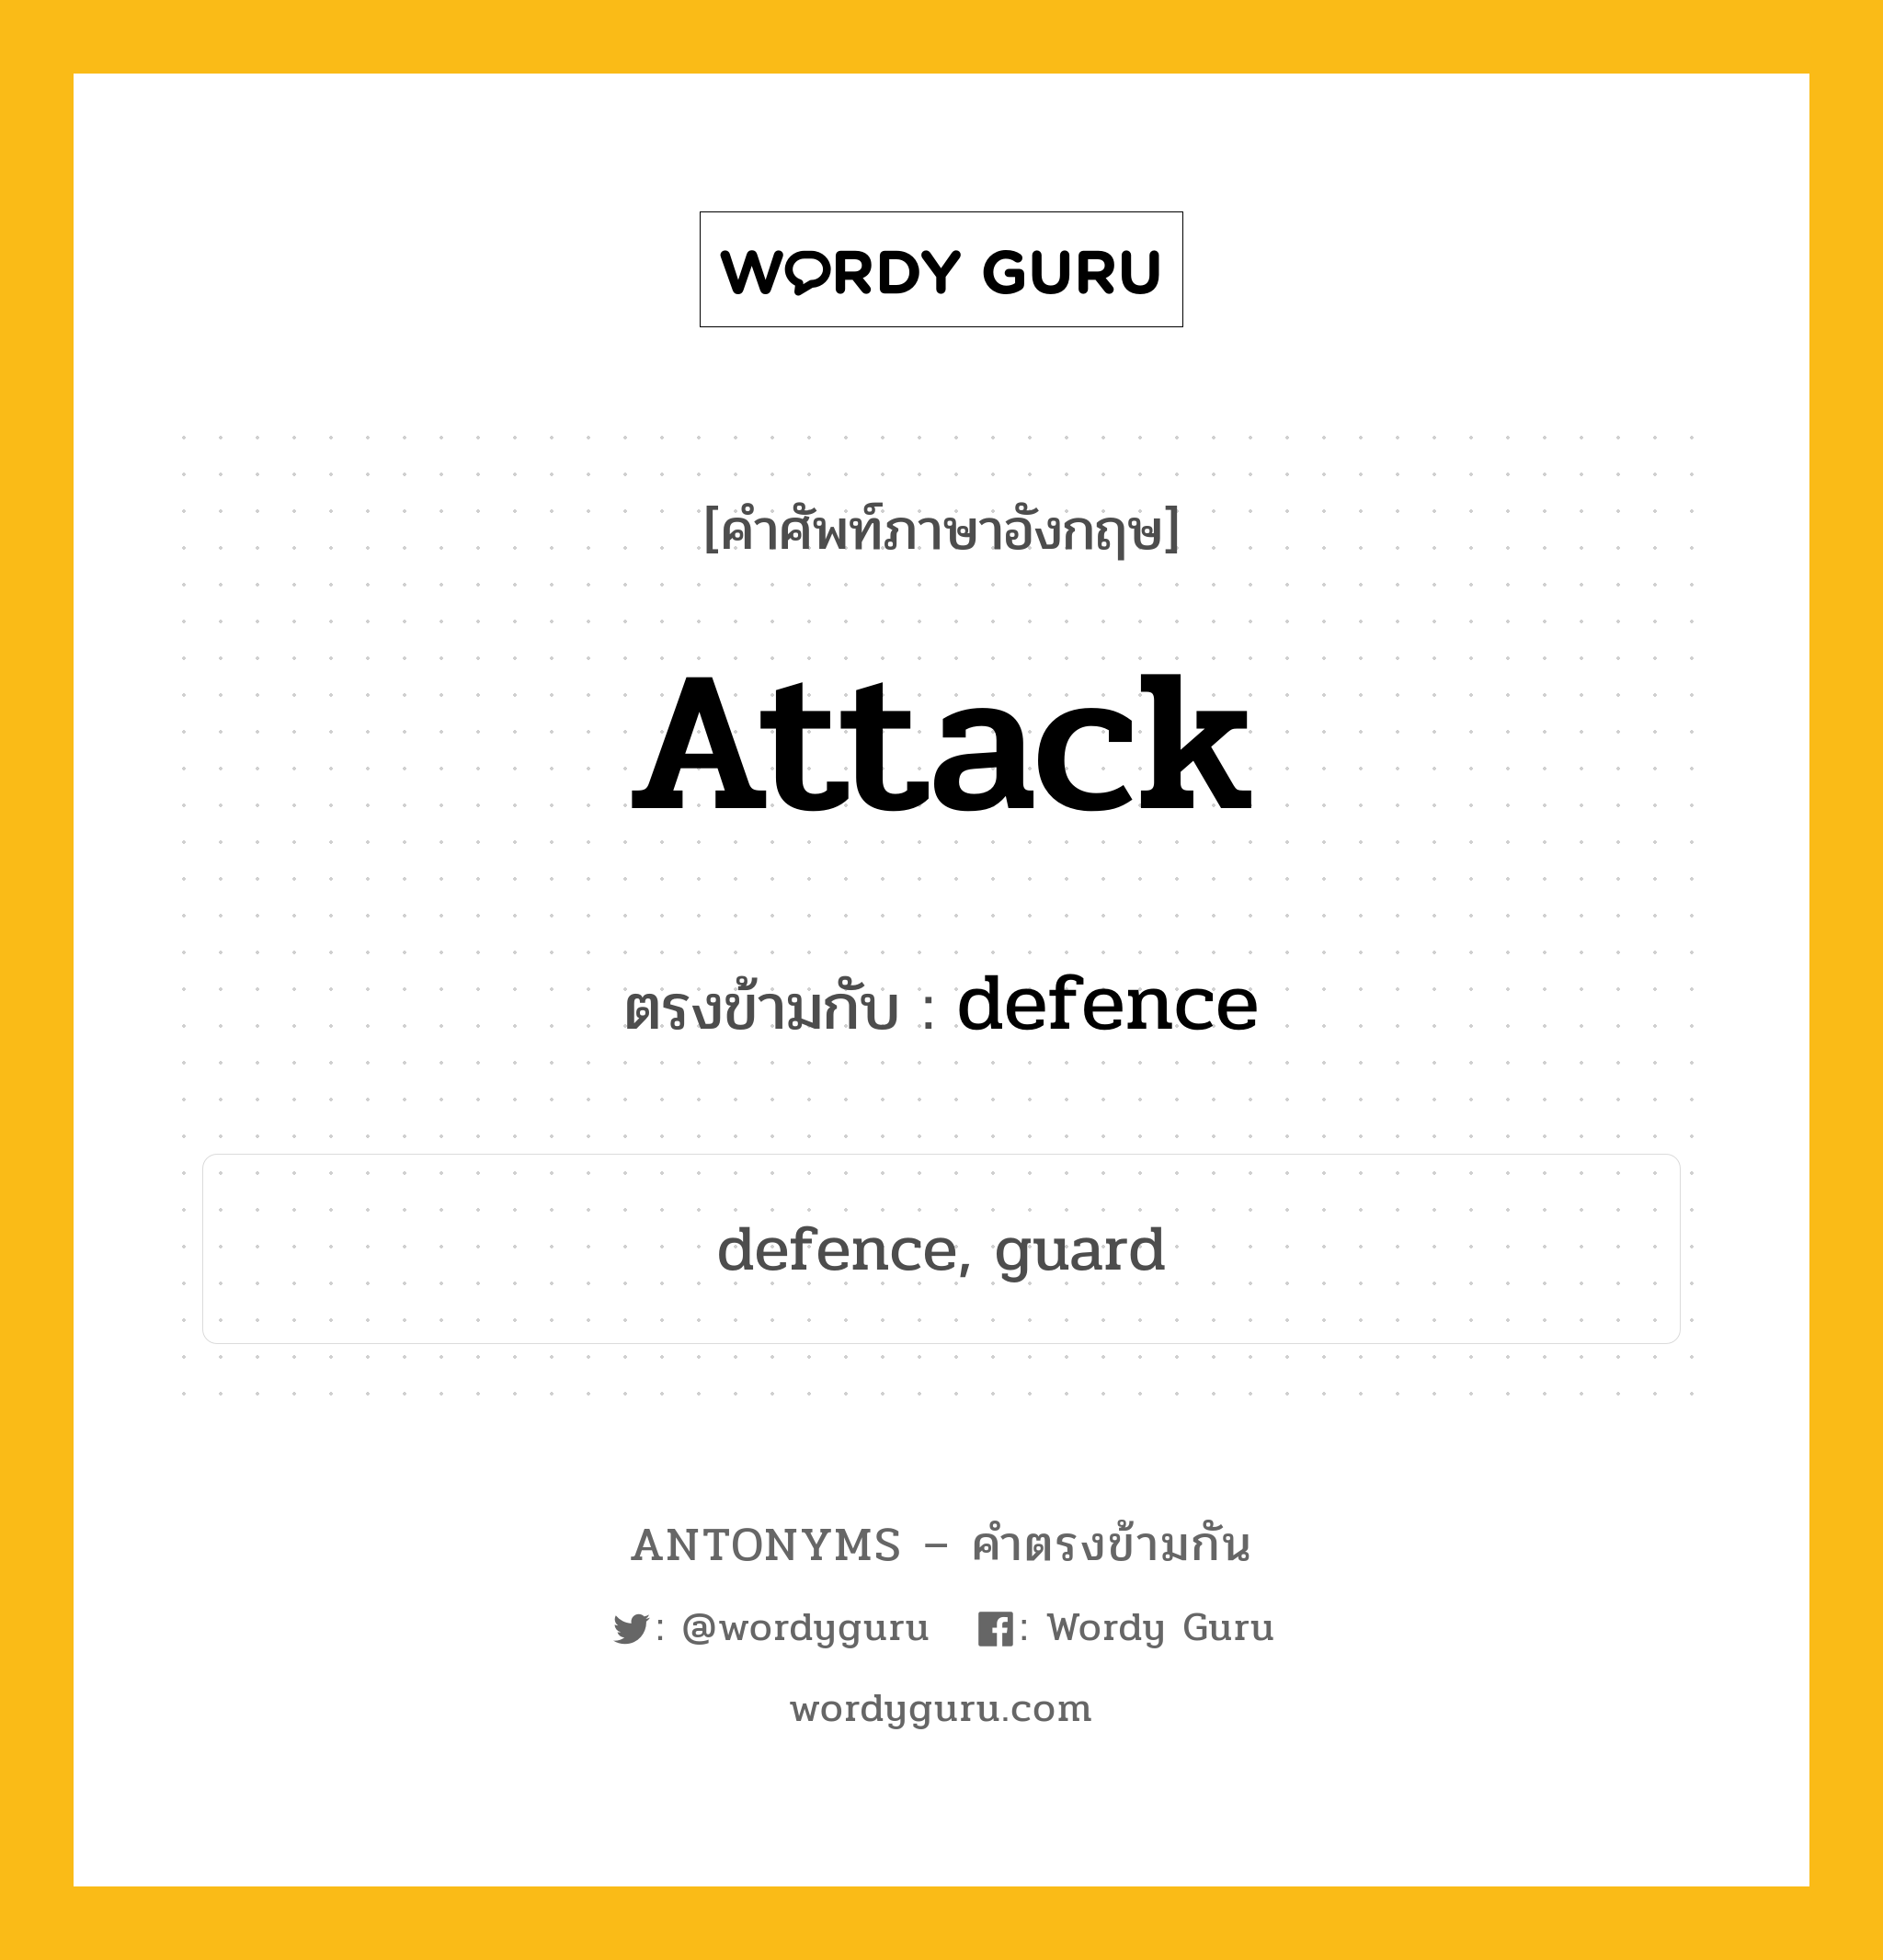 attack เป็นคำตรงข้ามกับคำไหนบ้าง?, คำศัพท์ภาษาอังกฤษ attack ตรงข้ามกับ defence หมวด defence